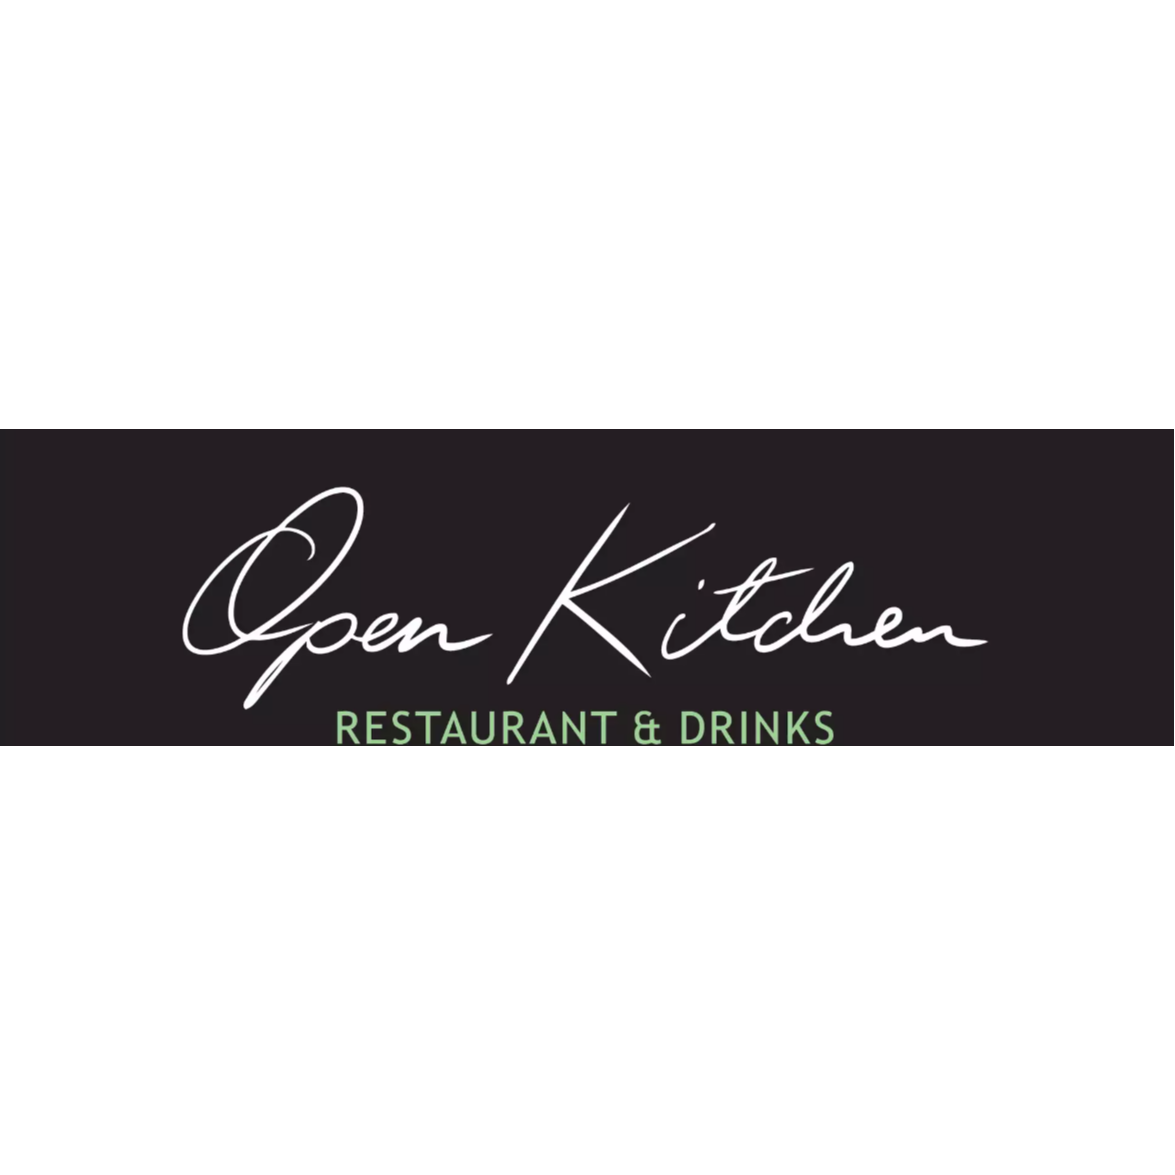 Logo Open Kitchen Restaurant & Drinks